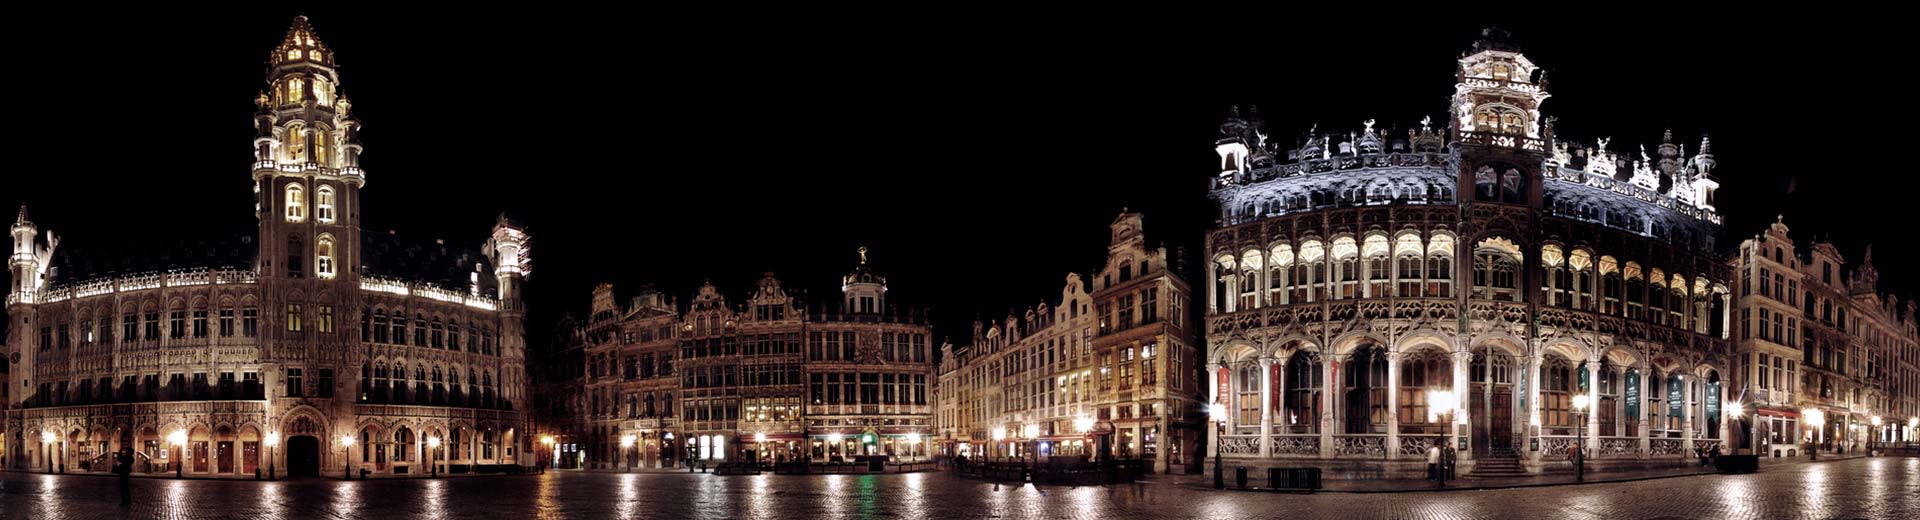 市庁舎が見える夜のブリュッセル中心部。